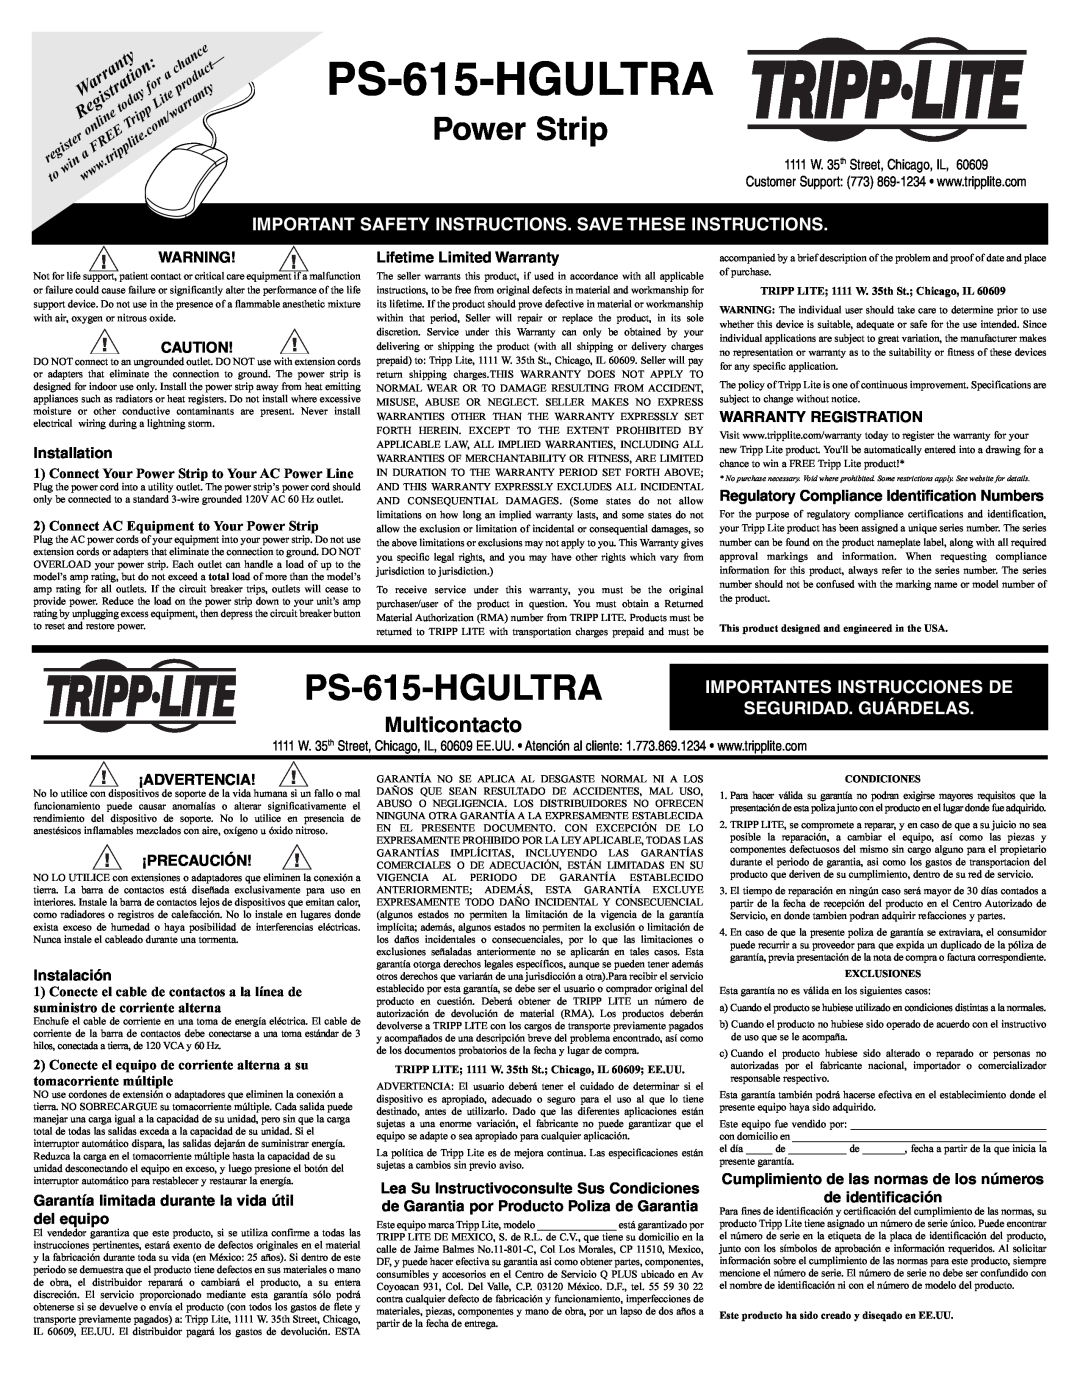 Tripp Lite PS-615-HGULTRA important safety instructions Multicontacto, Importantes Instrucciones De Seguridad. Guárdelas 